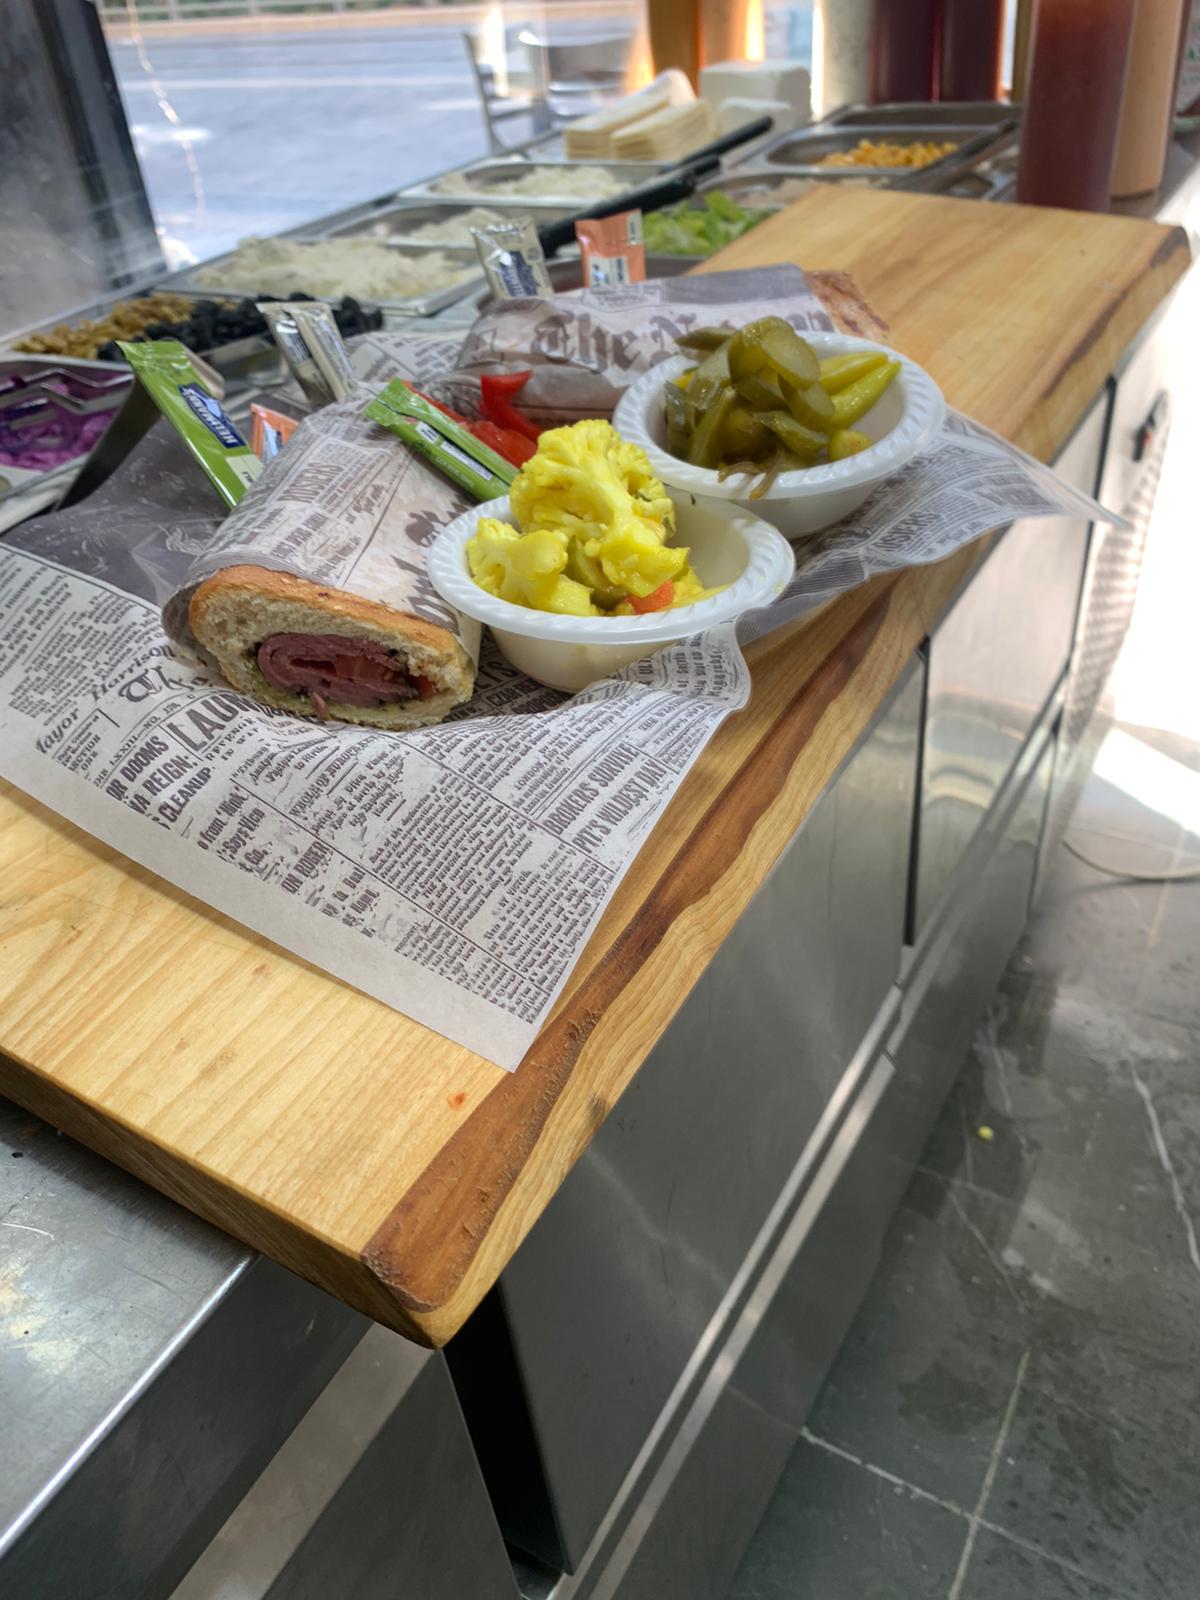  جديد في يافا: مطعم توست ستيشن لأشهى الوجبات الخفيفة والساندويشات 